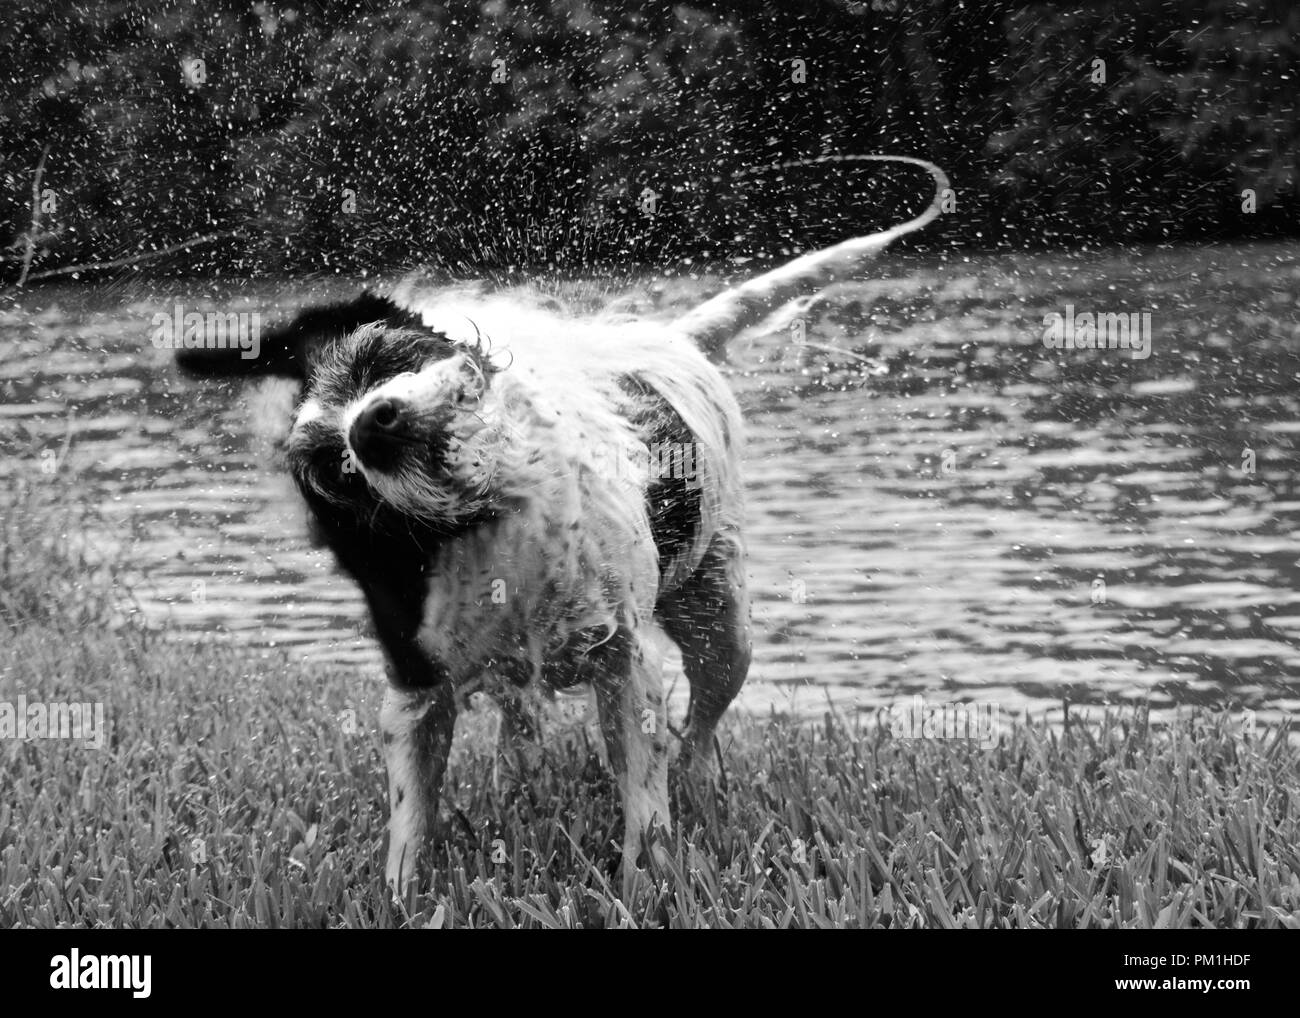 Schwarze und weisse Hund schütteln Wasser weg auf Gras von Fluss Stockfoto